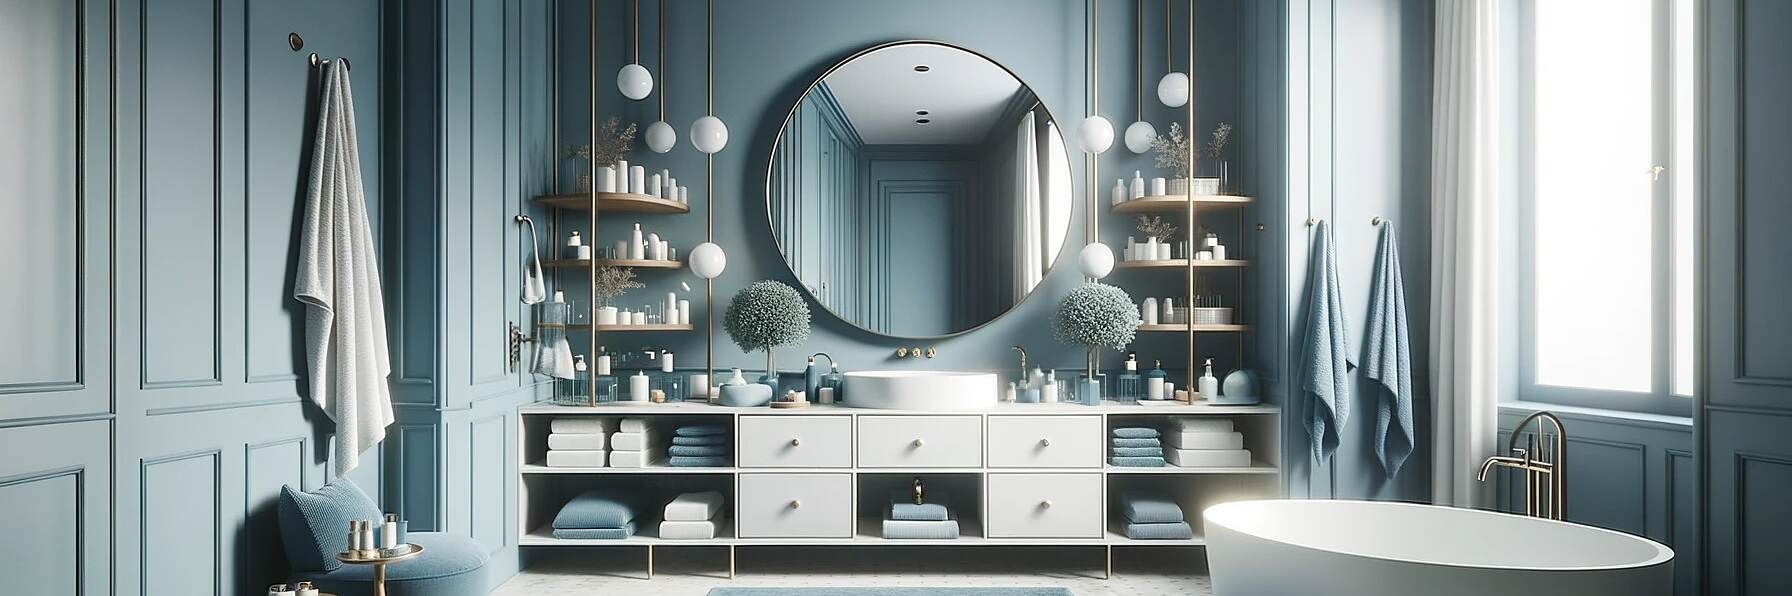 DALL·E 2023-10-12 17.04.16 - Foto im maximalen Format_ Ein helles Badezimmer mit marineblauen Akzenten. Der zentrale, runde Spiegel steht im Mittelpunkt und wird von blauen Möbeln